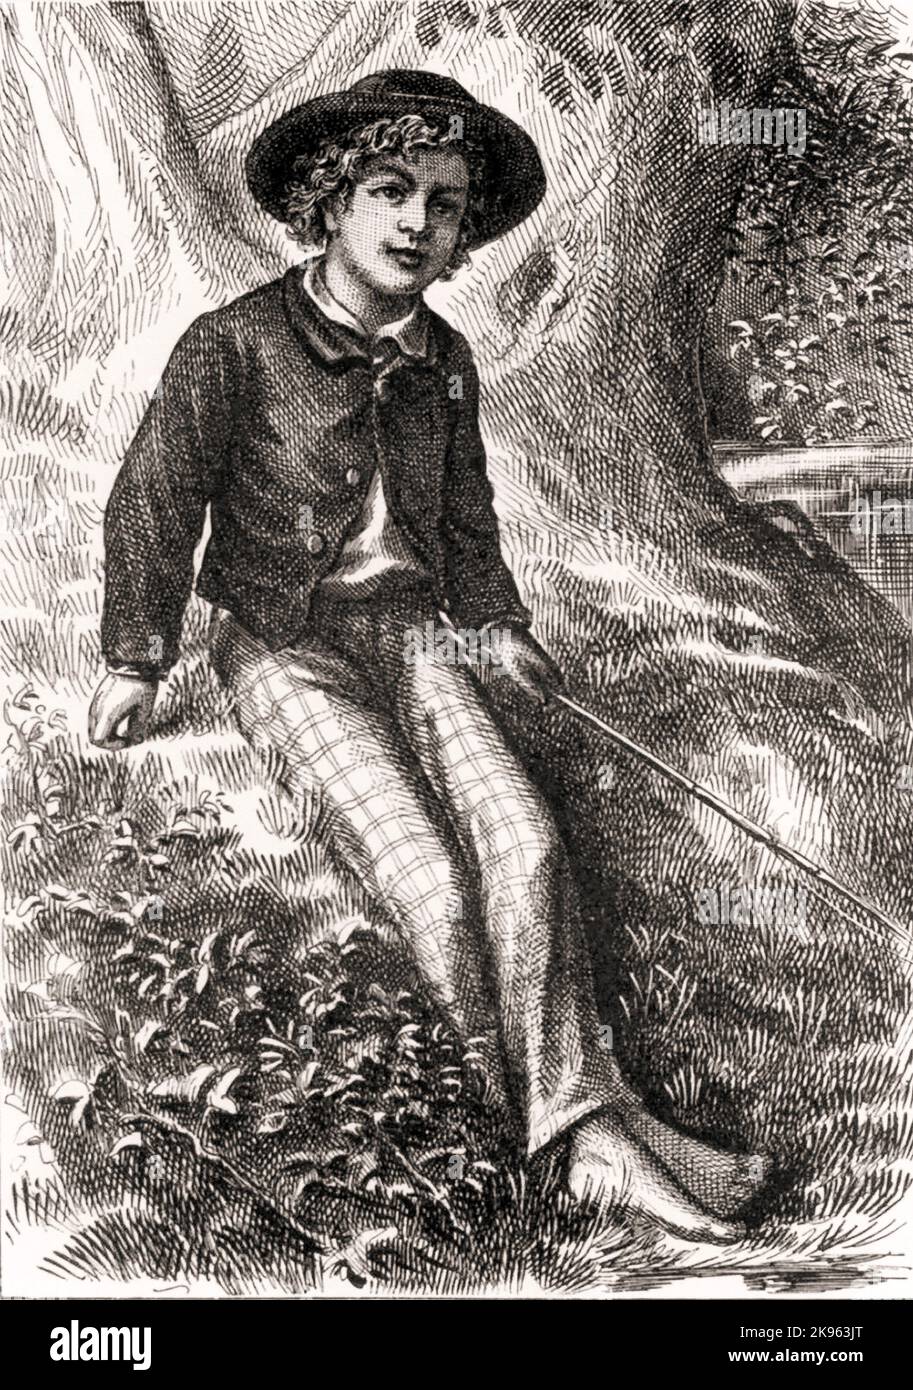 Libro Adventures of Tom Sawyer por Mark Twain 1876 frontispiece Foto de stock